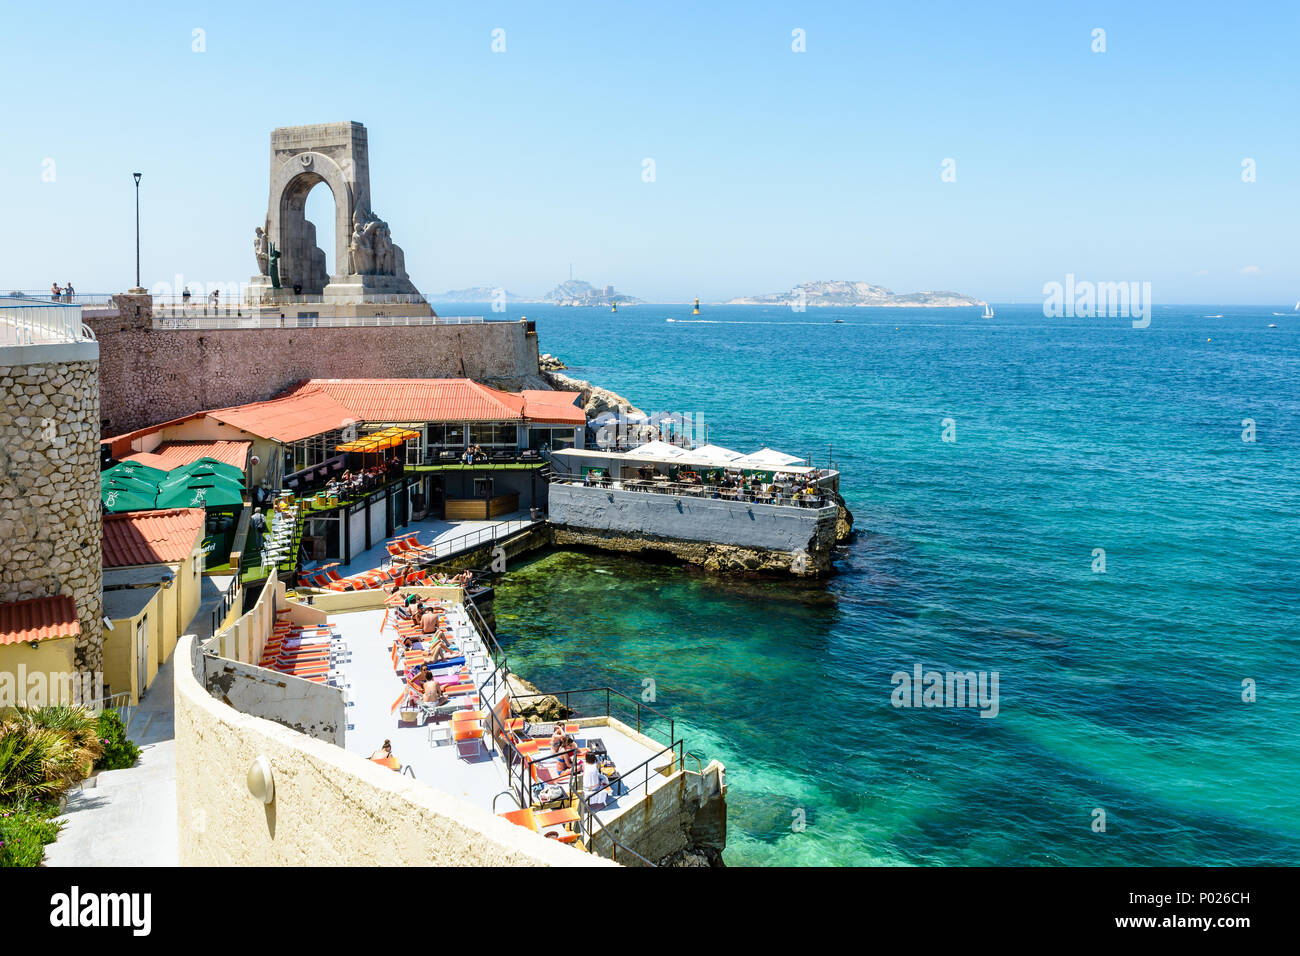 Un ristorante sulla spiaggia in riva al di sotto del memoriale di guerra per l'esercito orientale a Marsiglia, Francia, ha impostato la sua terrazza con ombrelloni e sedie a sdraio. Foto Stock